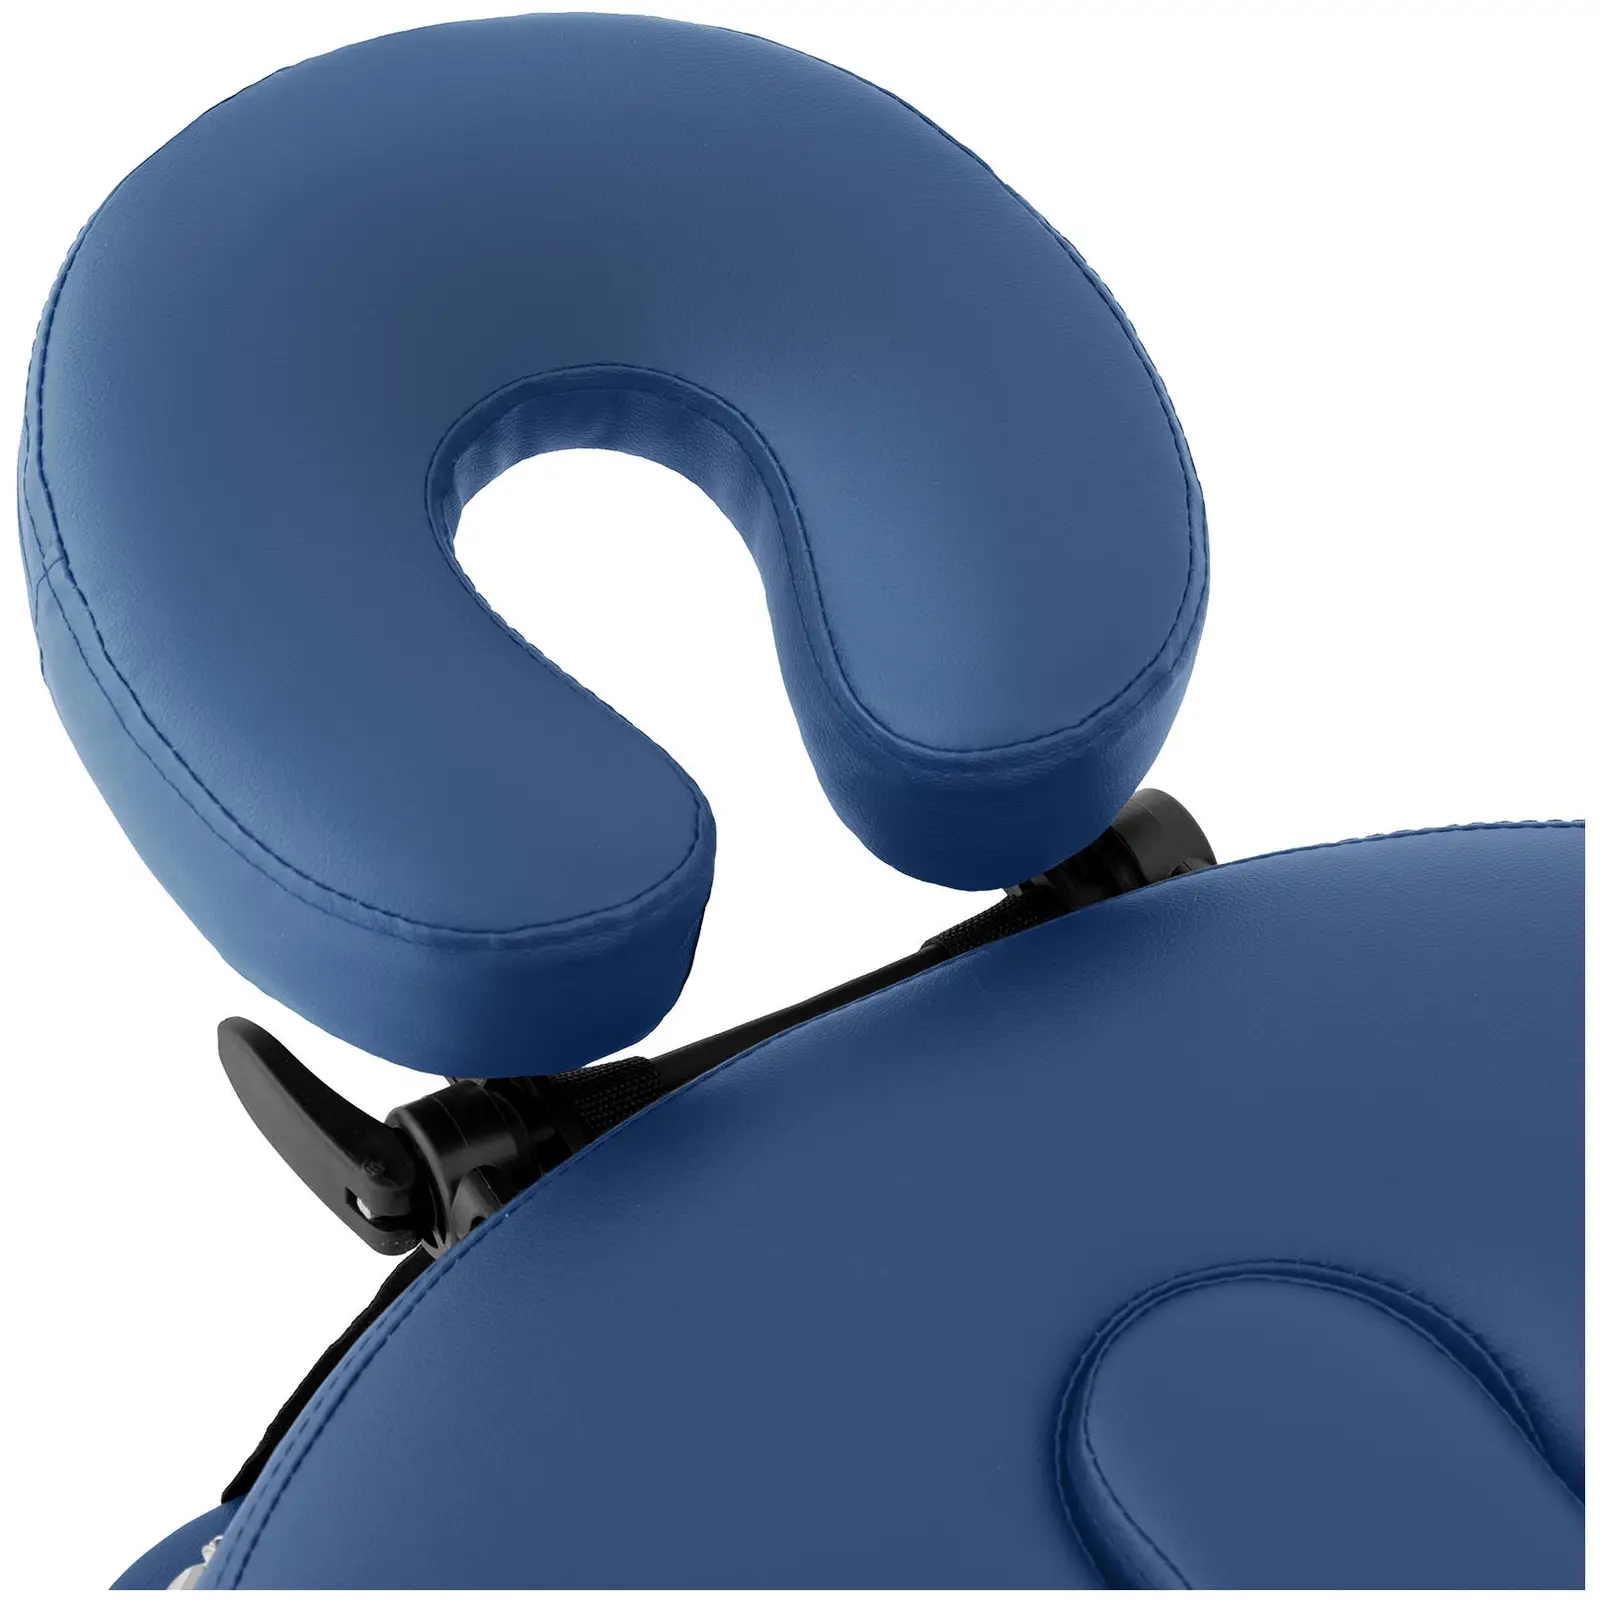 Massageliege klappbar - 185 - 211 x 70 - 88 x 63 - 85 cm - 227 kg - Blau